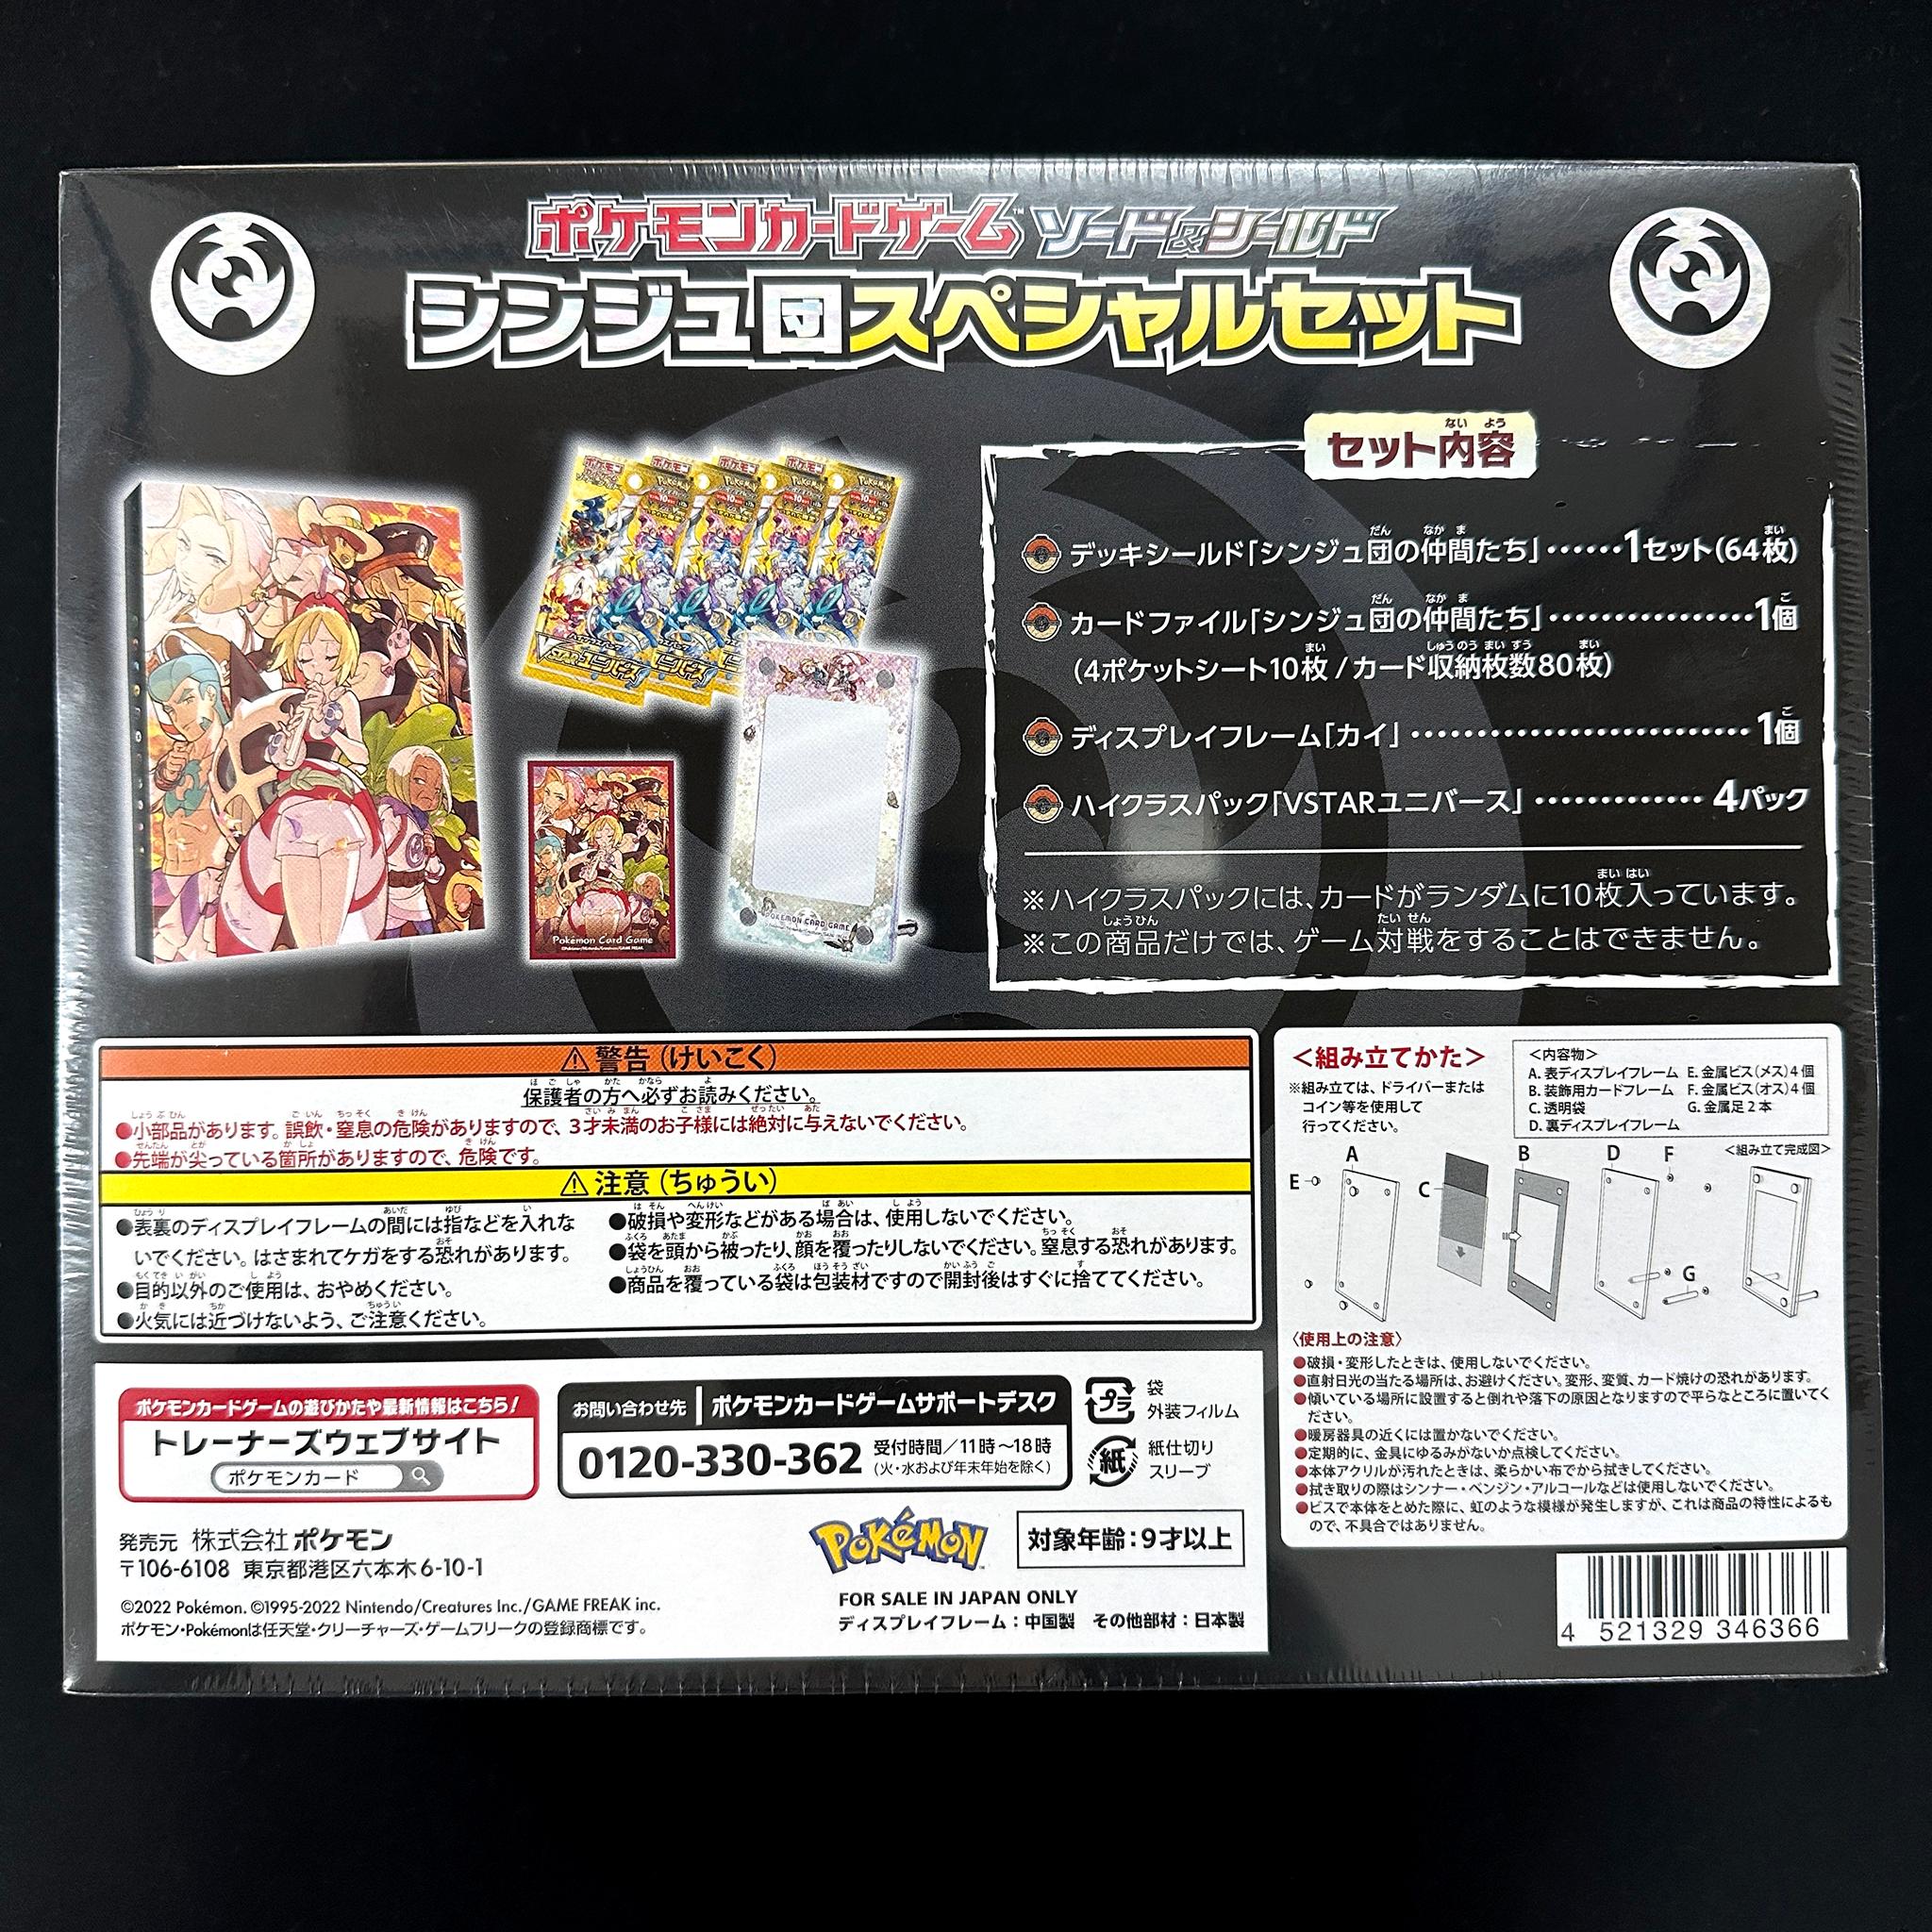 Pokemon Card Game Sword Shield V Special Set Rebellion Crash Buy Pokem